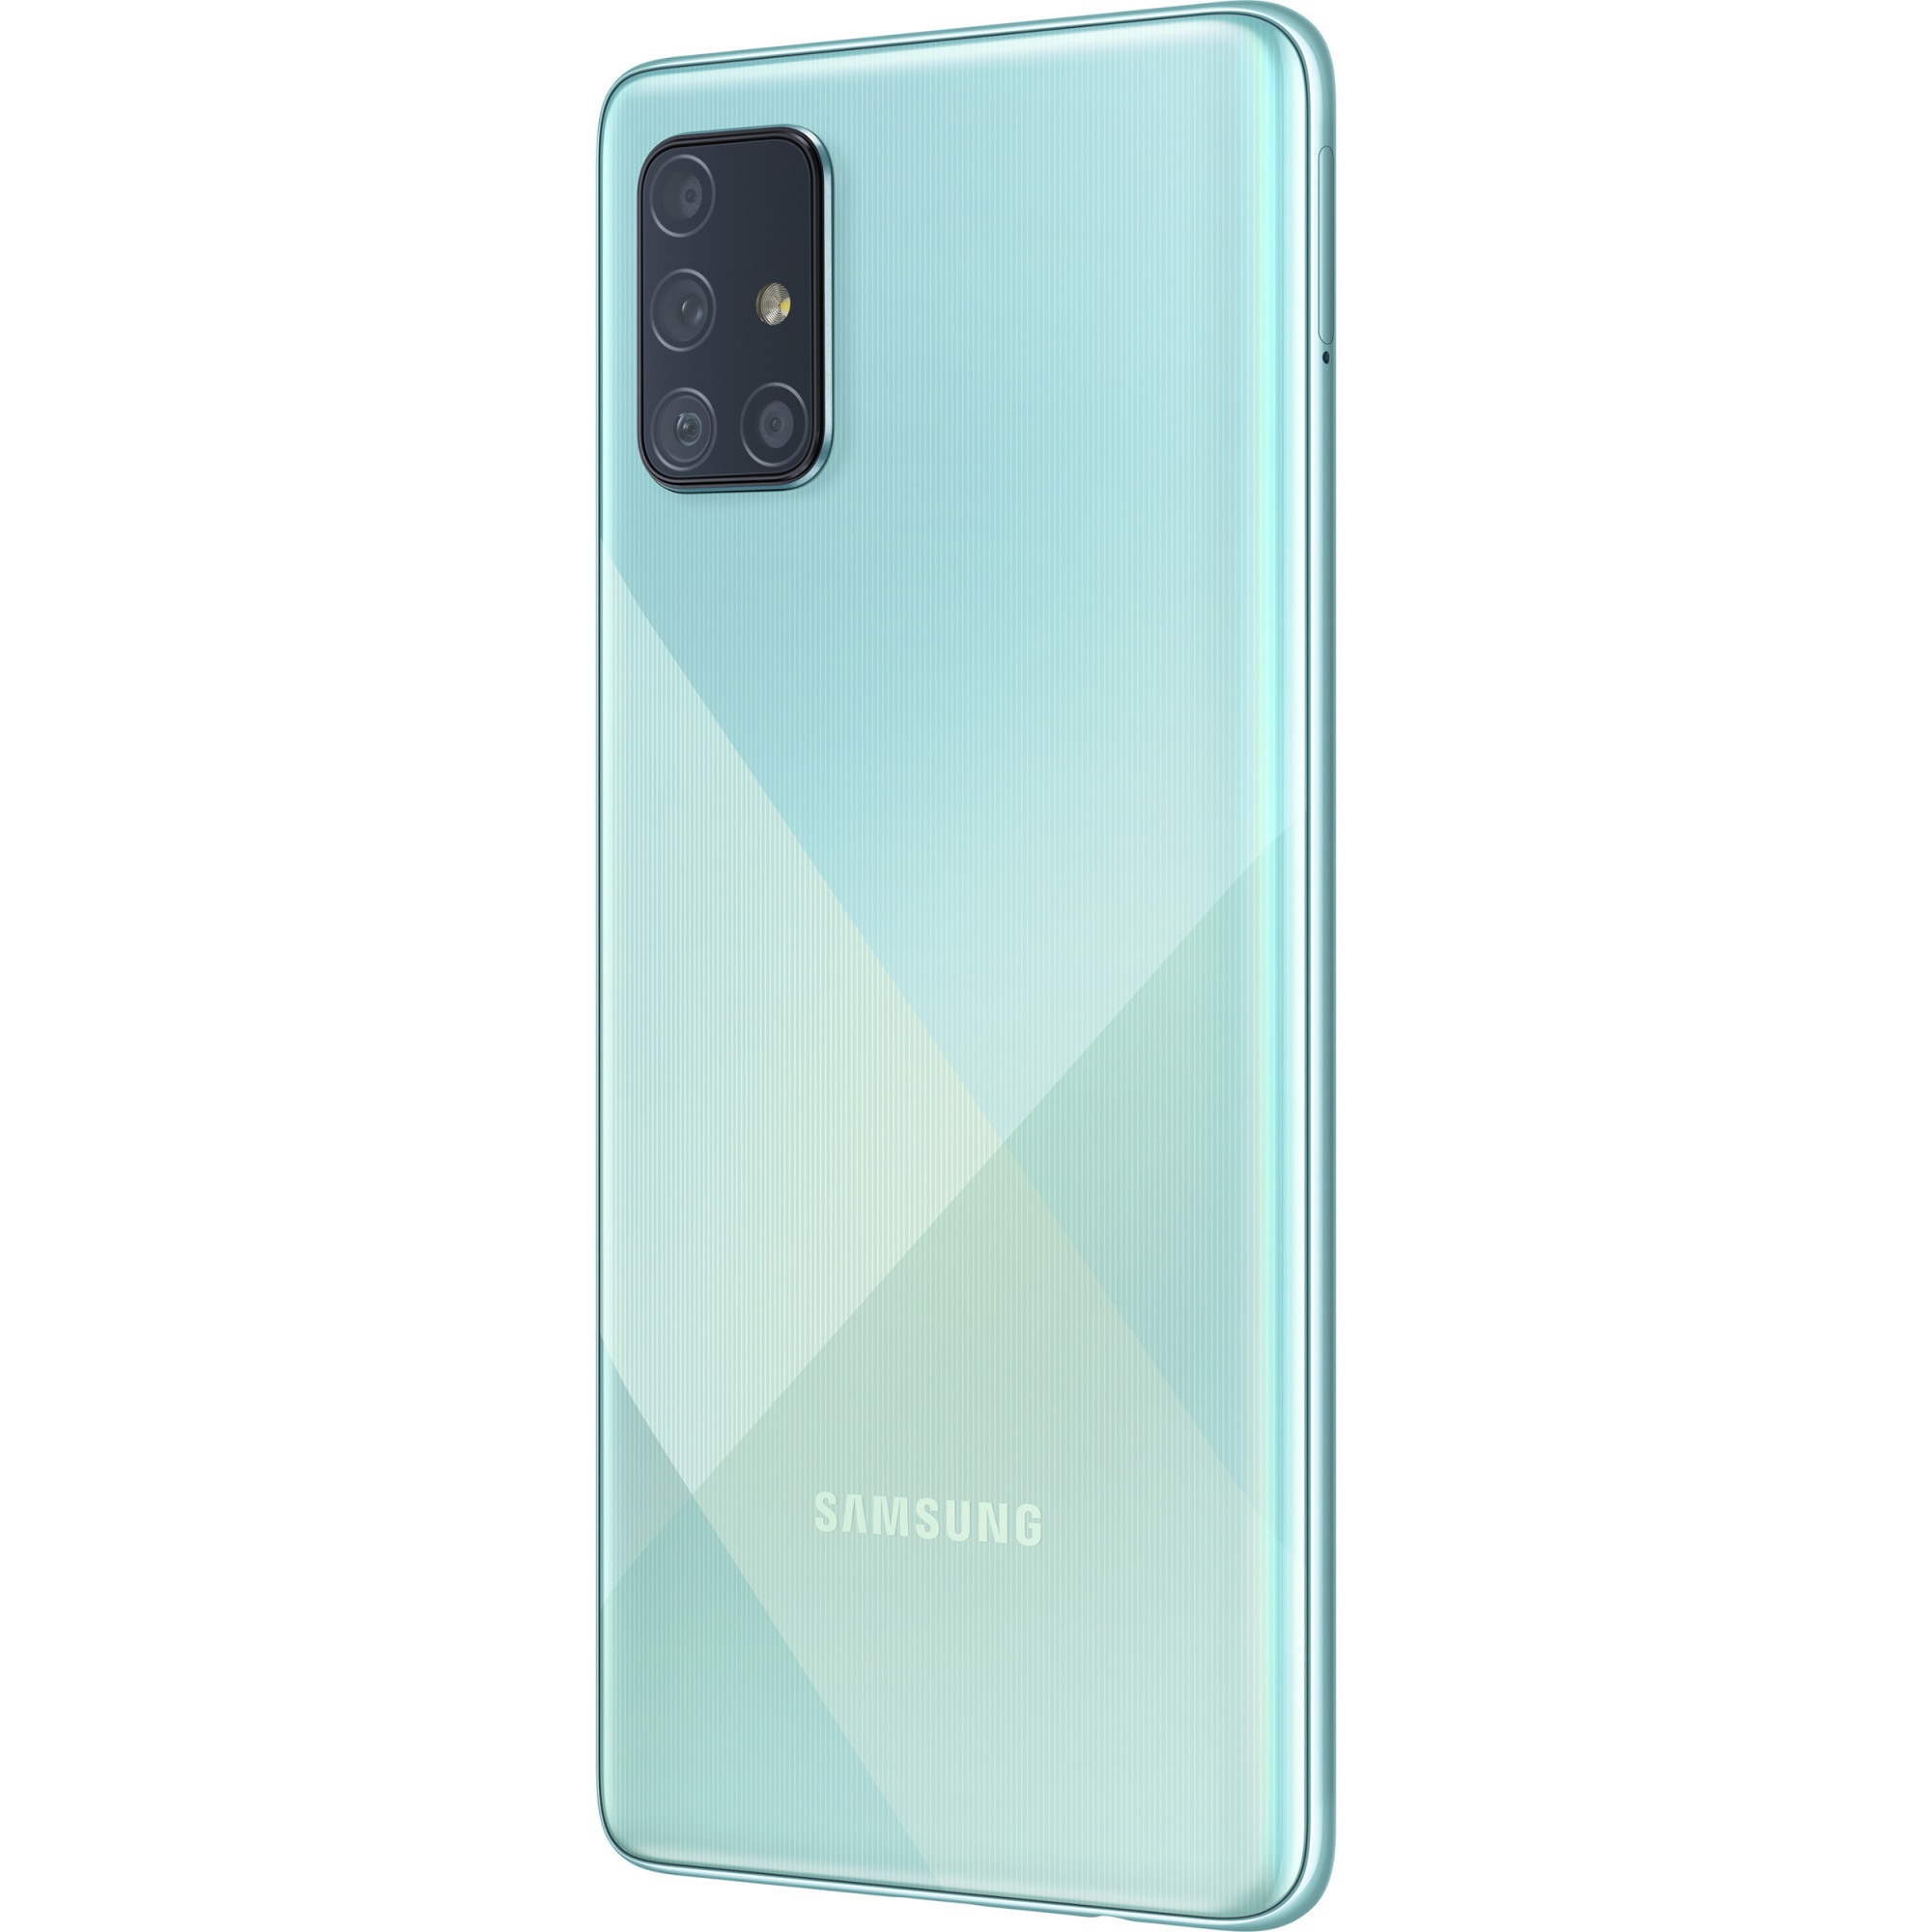 Купить телефон самсунг 128. Samsung Galaxy a51 128gb. Samsung Galaxy a51 64gb. Samsung Galaxy a71 64gb. Samsung Galaxy a51 128gb Blue.